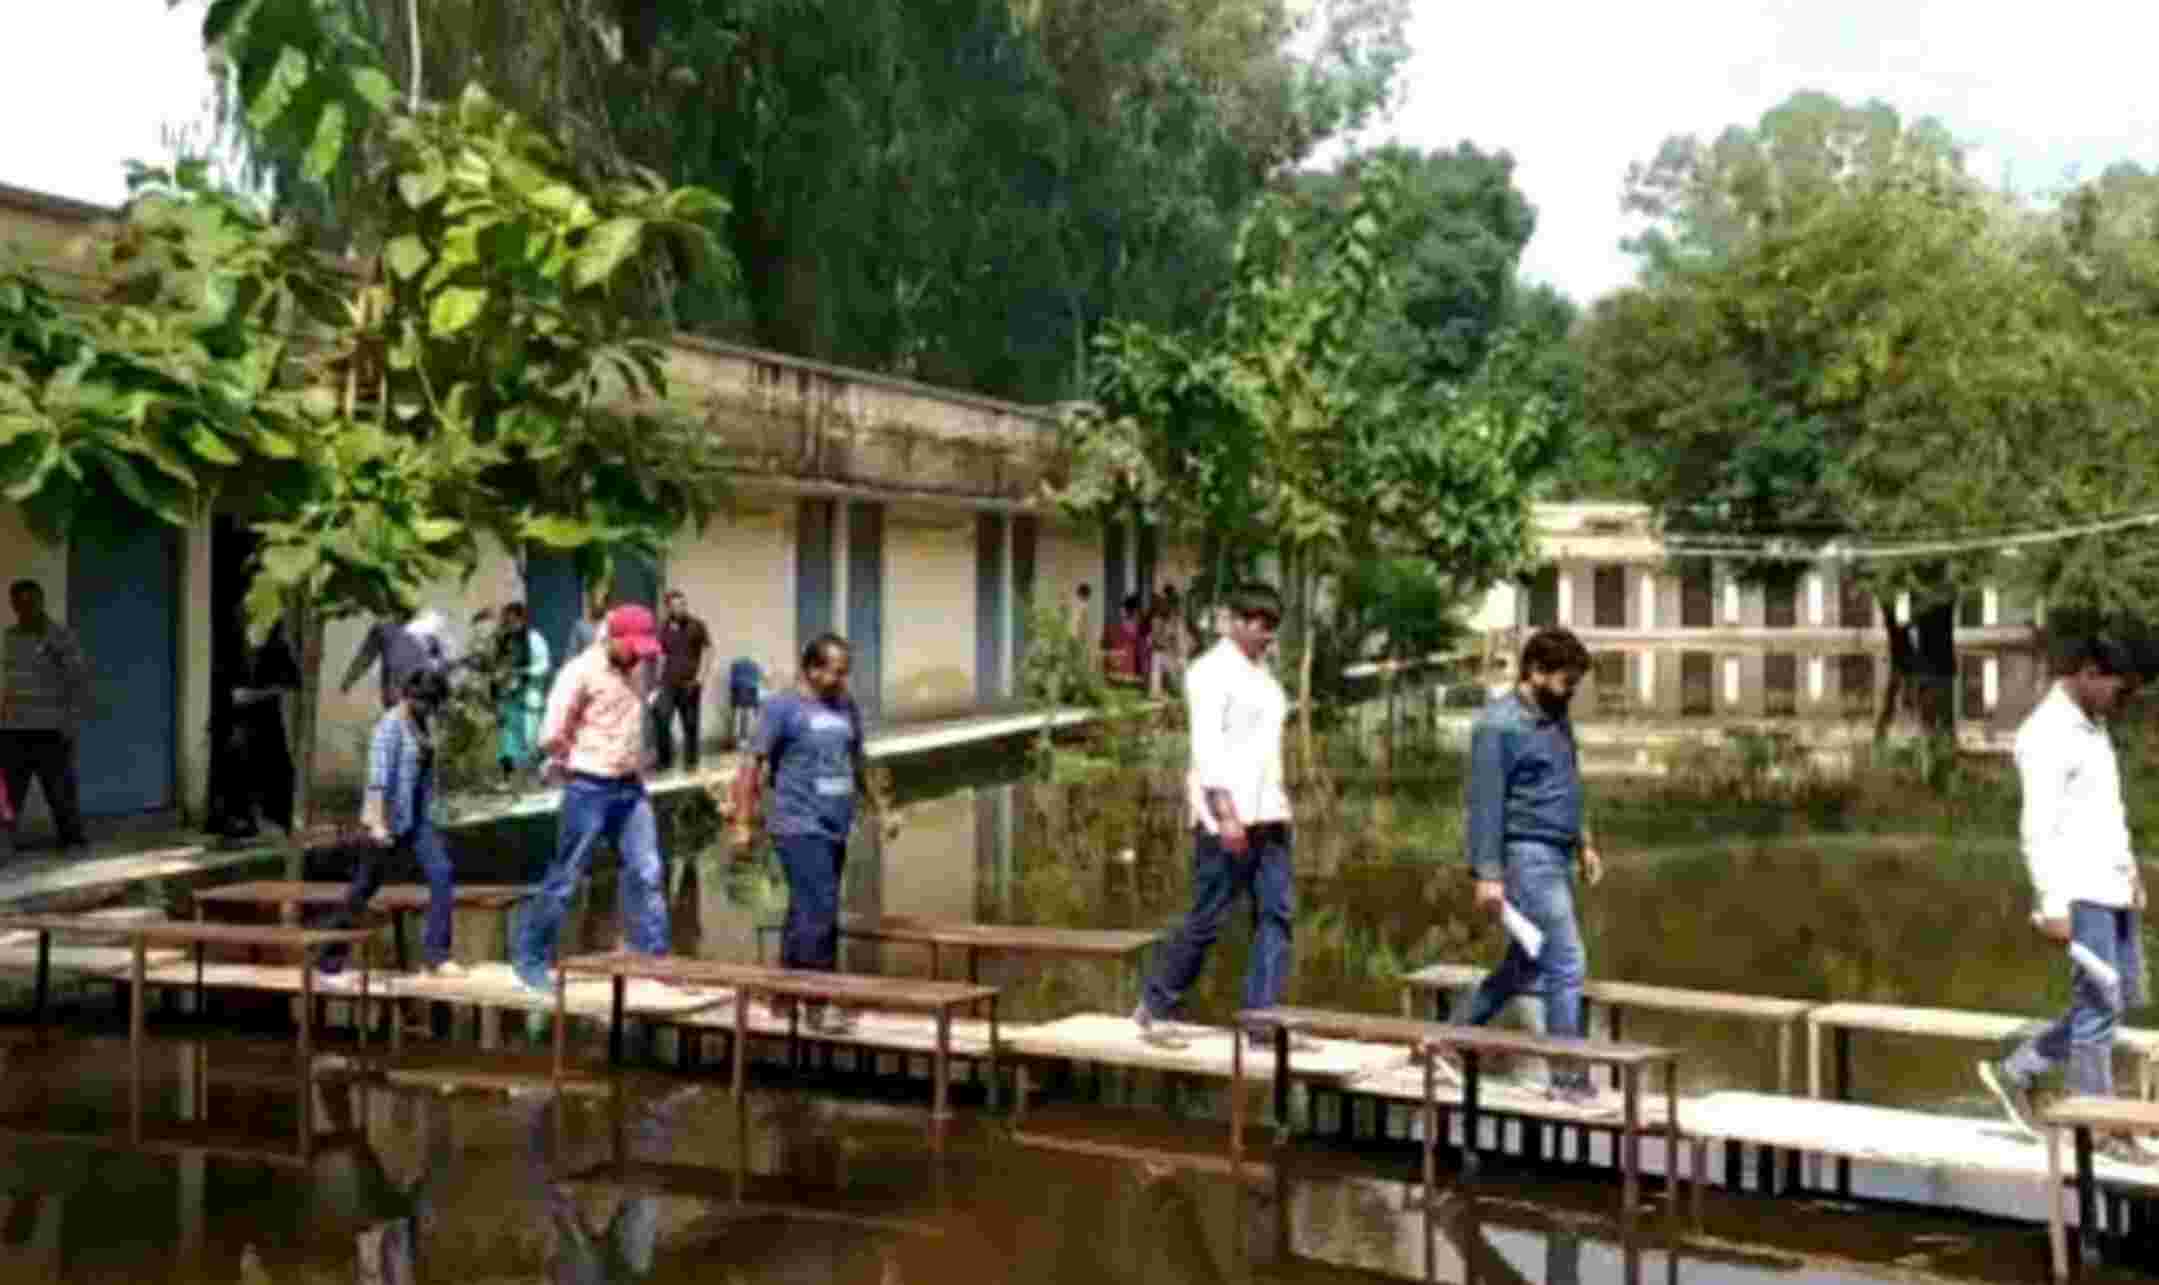 Pilibhit News : UP के पीलीभीत में परीक्षा केंद्र में जलभराव, बेंचों का बनाया पुल तब परीक्षा कक्ष में पहुंचे परीक्षार्थी